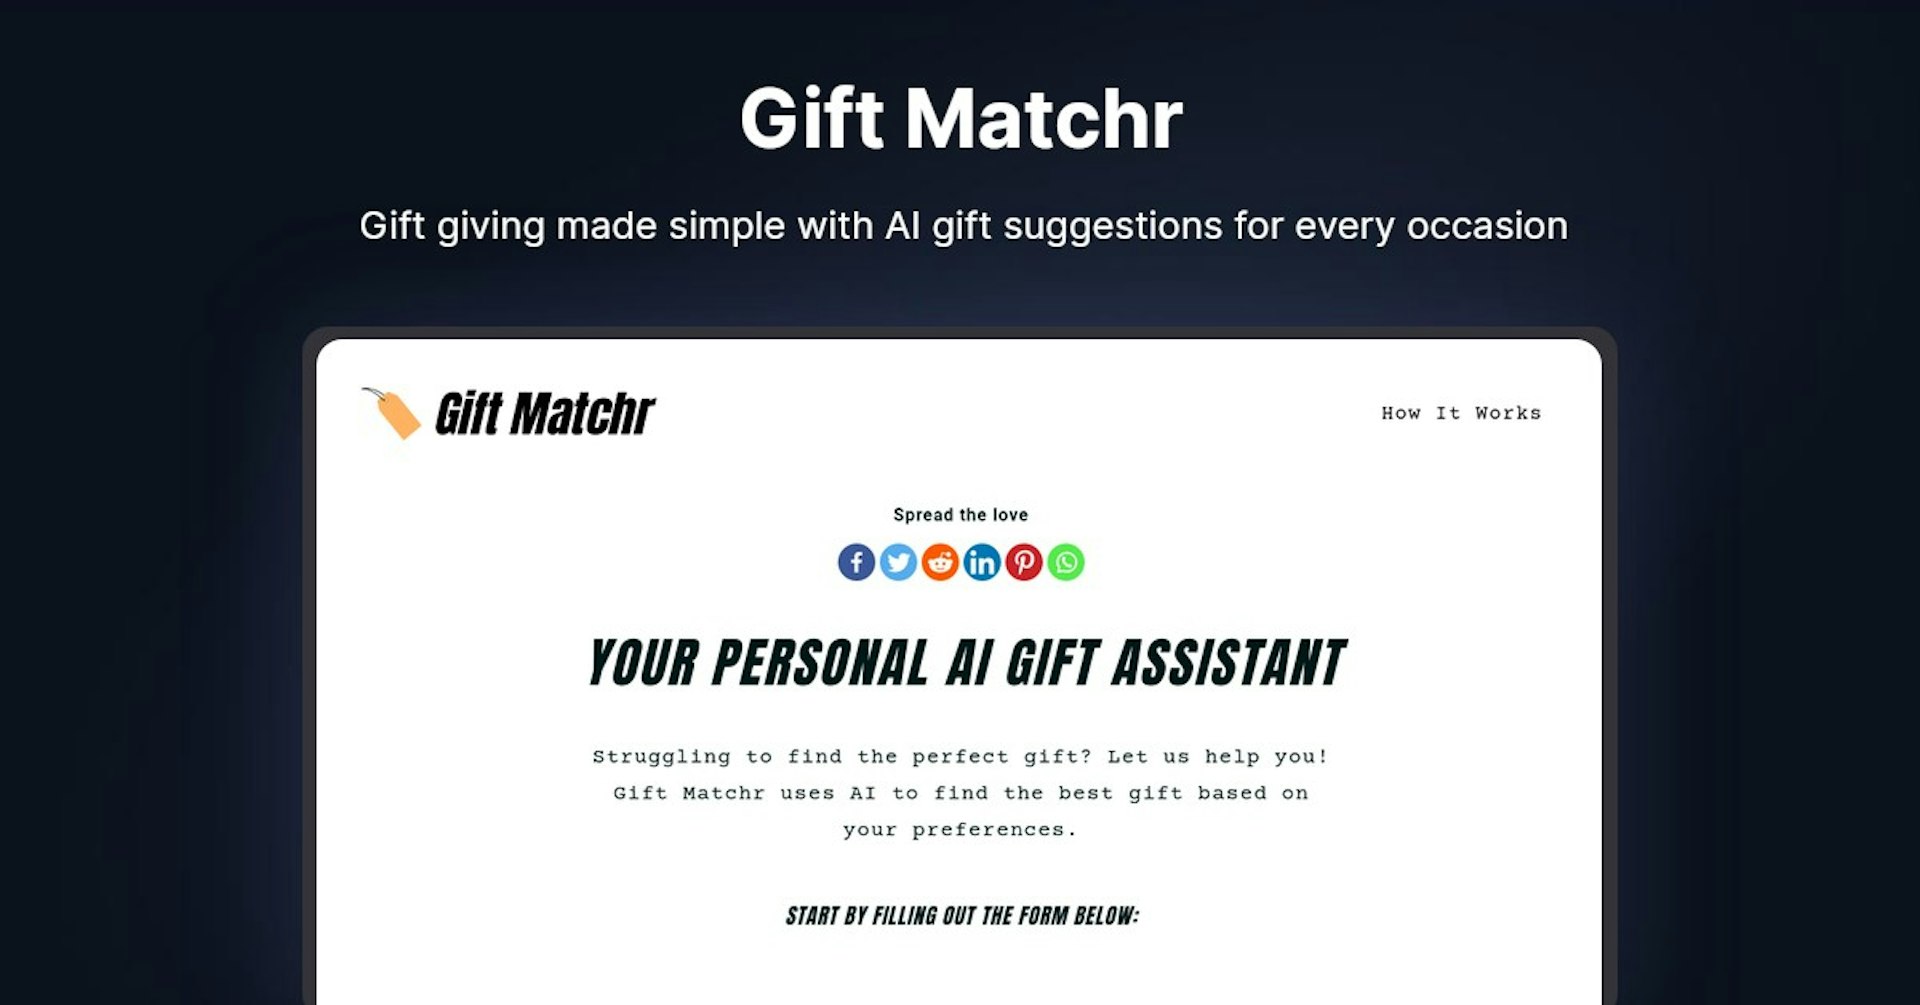 Gift Matchr